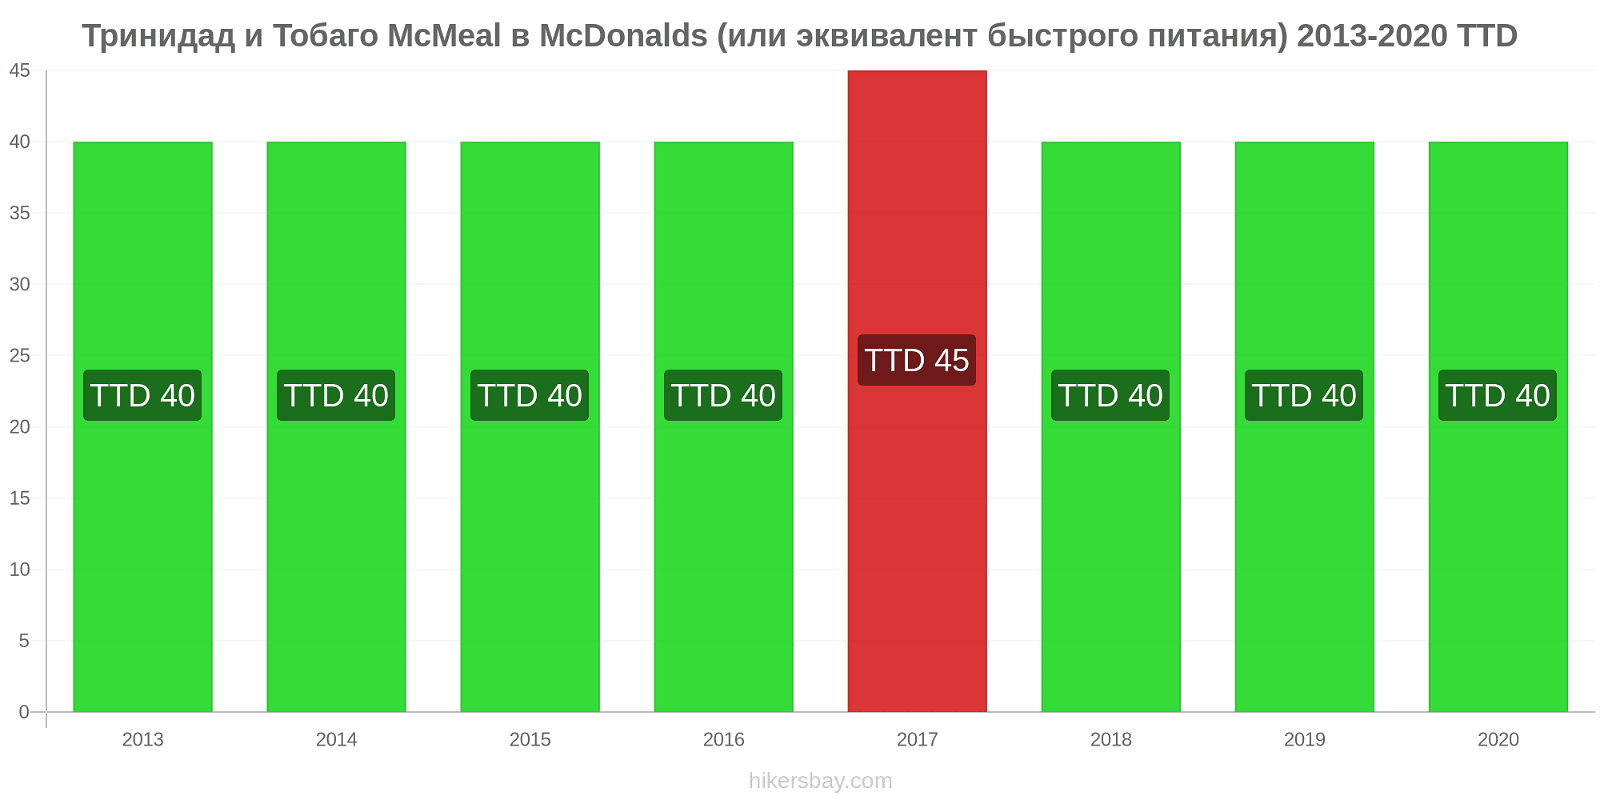 Тринидад и Тобаго изменения цен McMeal в McDonalds (или эквивалент быстрого питания) hikersbay.com